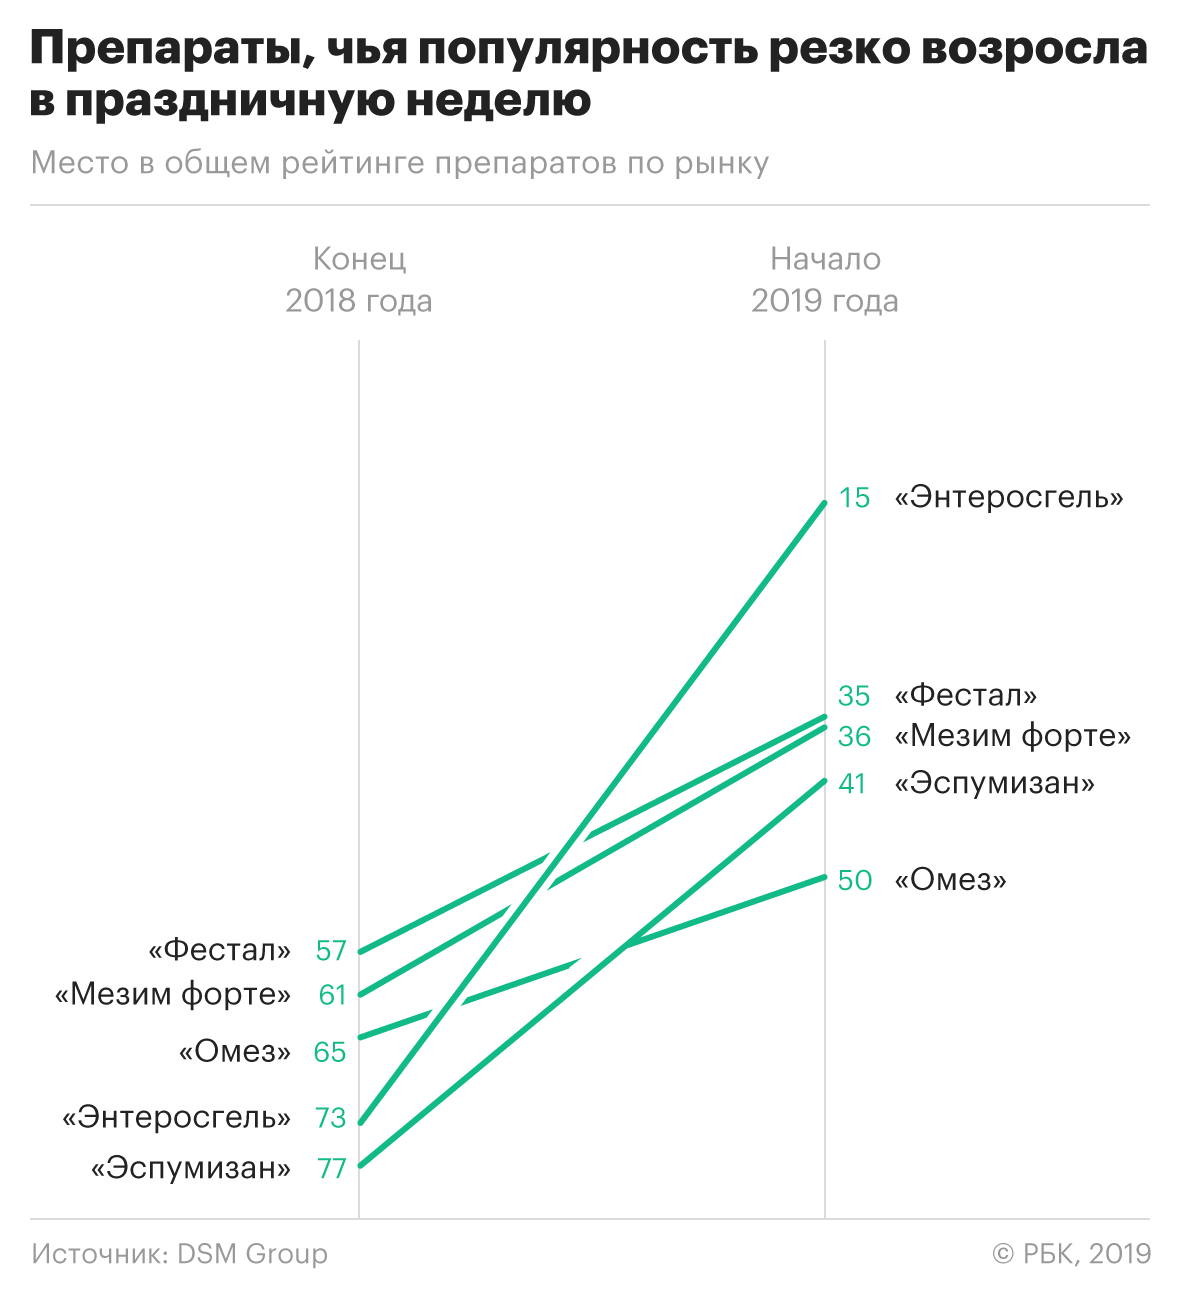 Аналитики назвали самые популярные лекарства у россиян в праздники